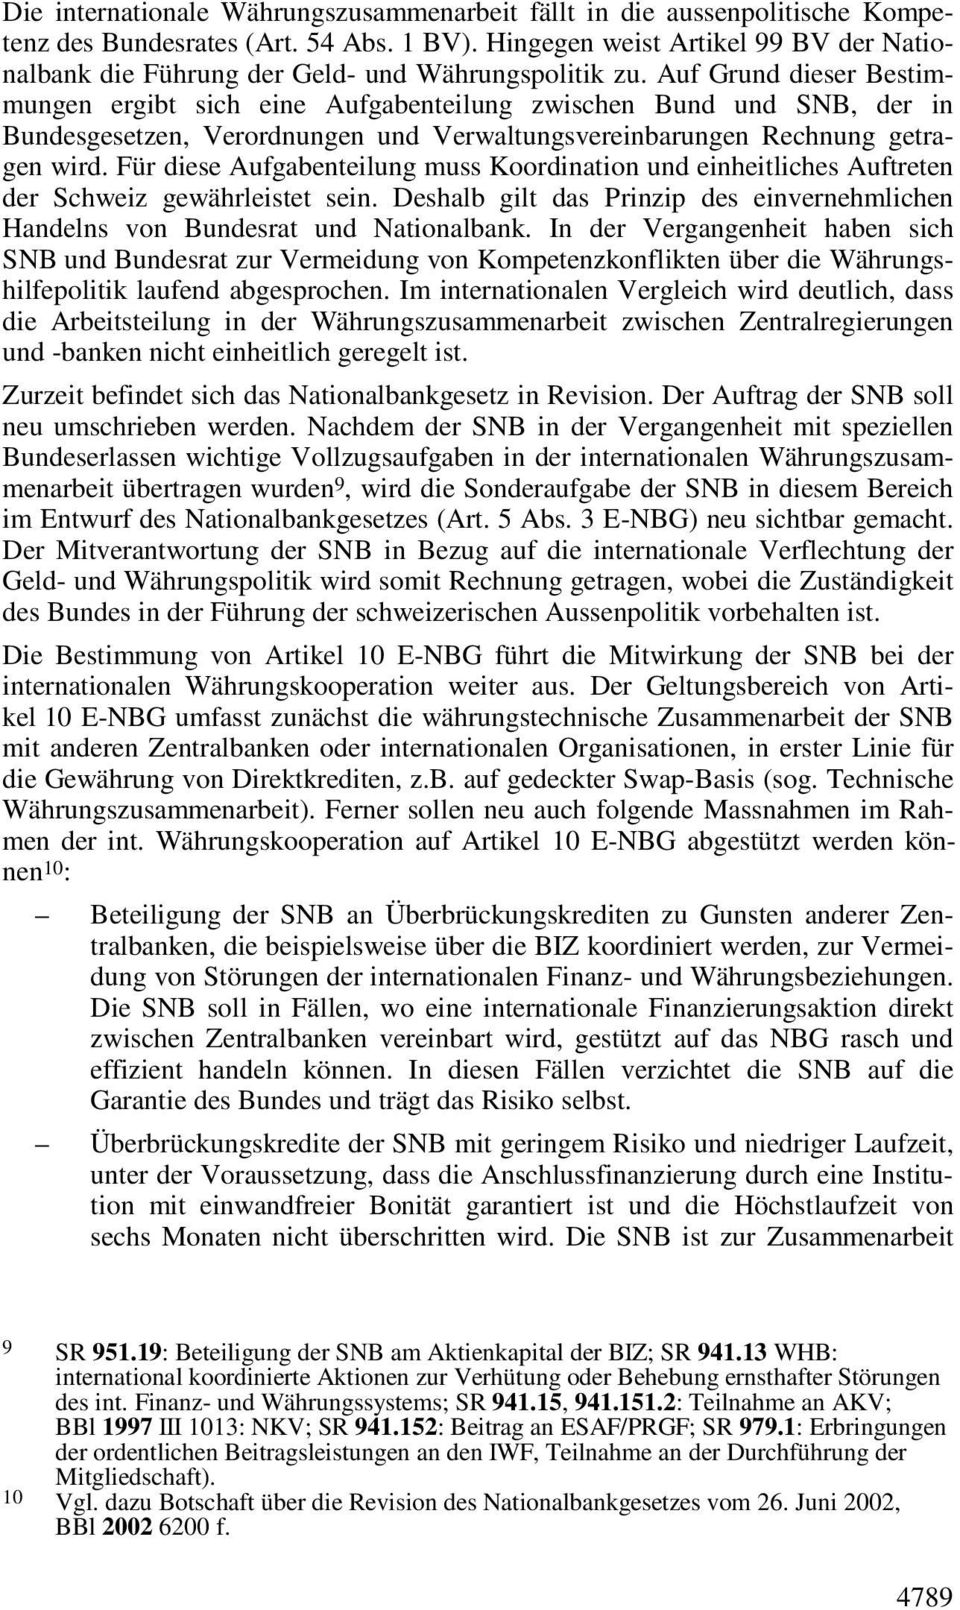 Auf Grund dieser Bestimmungen ergibt sich eine Aufgabenteilung zwischen Bund und SNB, der in Bundesgesetzen, Verordnungen und Verwaltungsvereinbarungen Rechnung getragen wird.